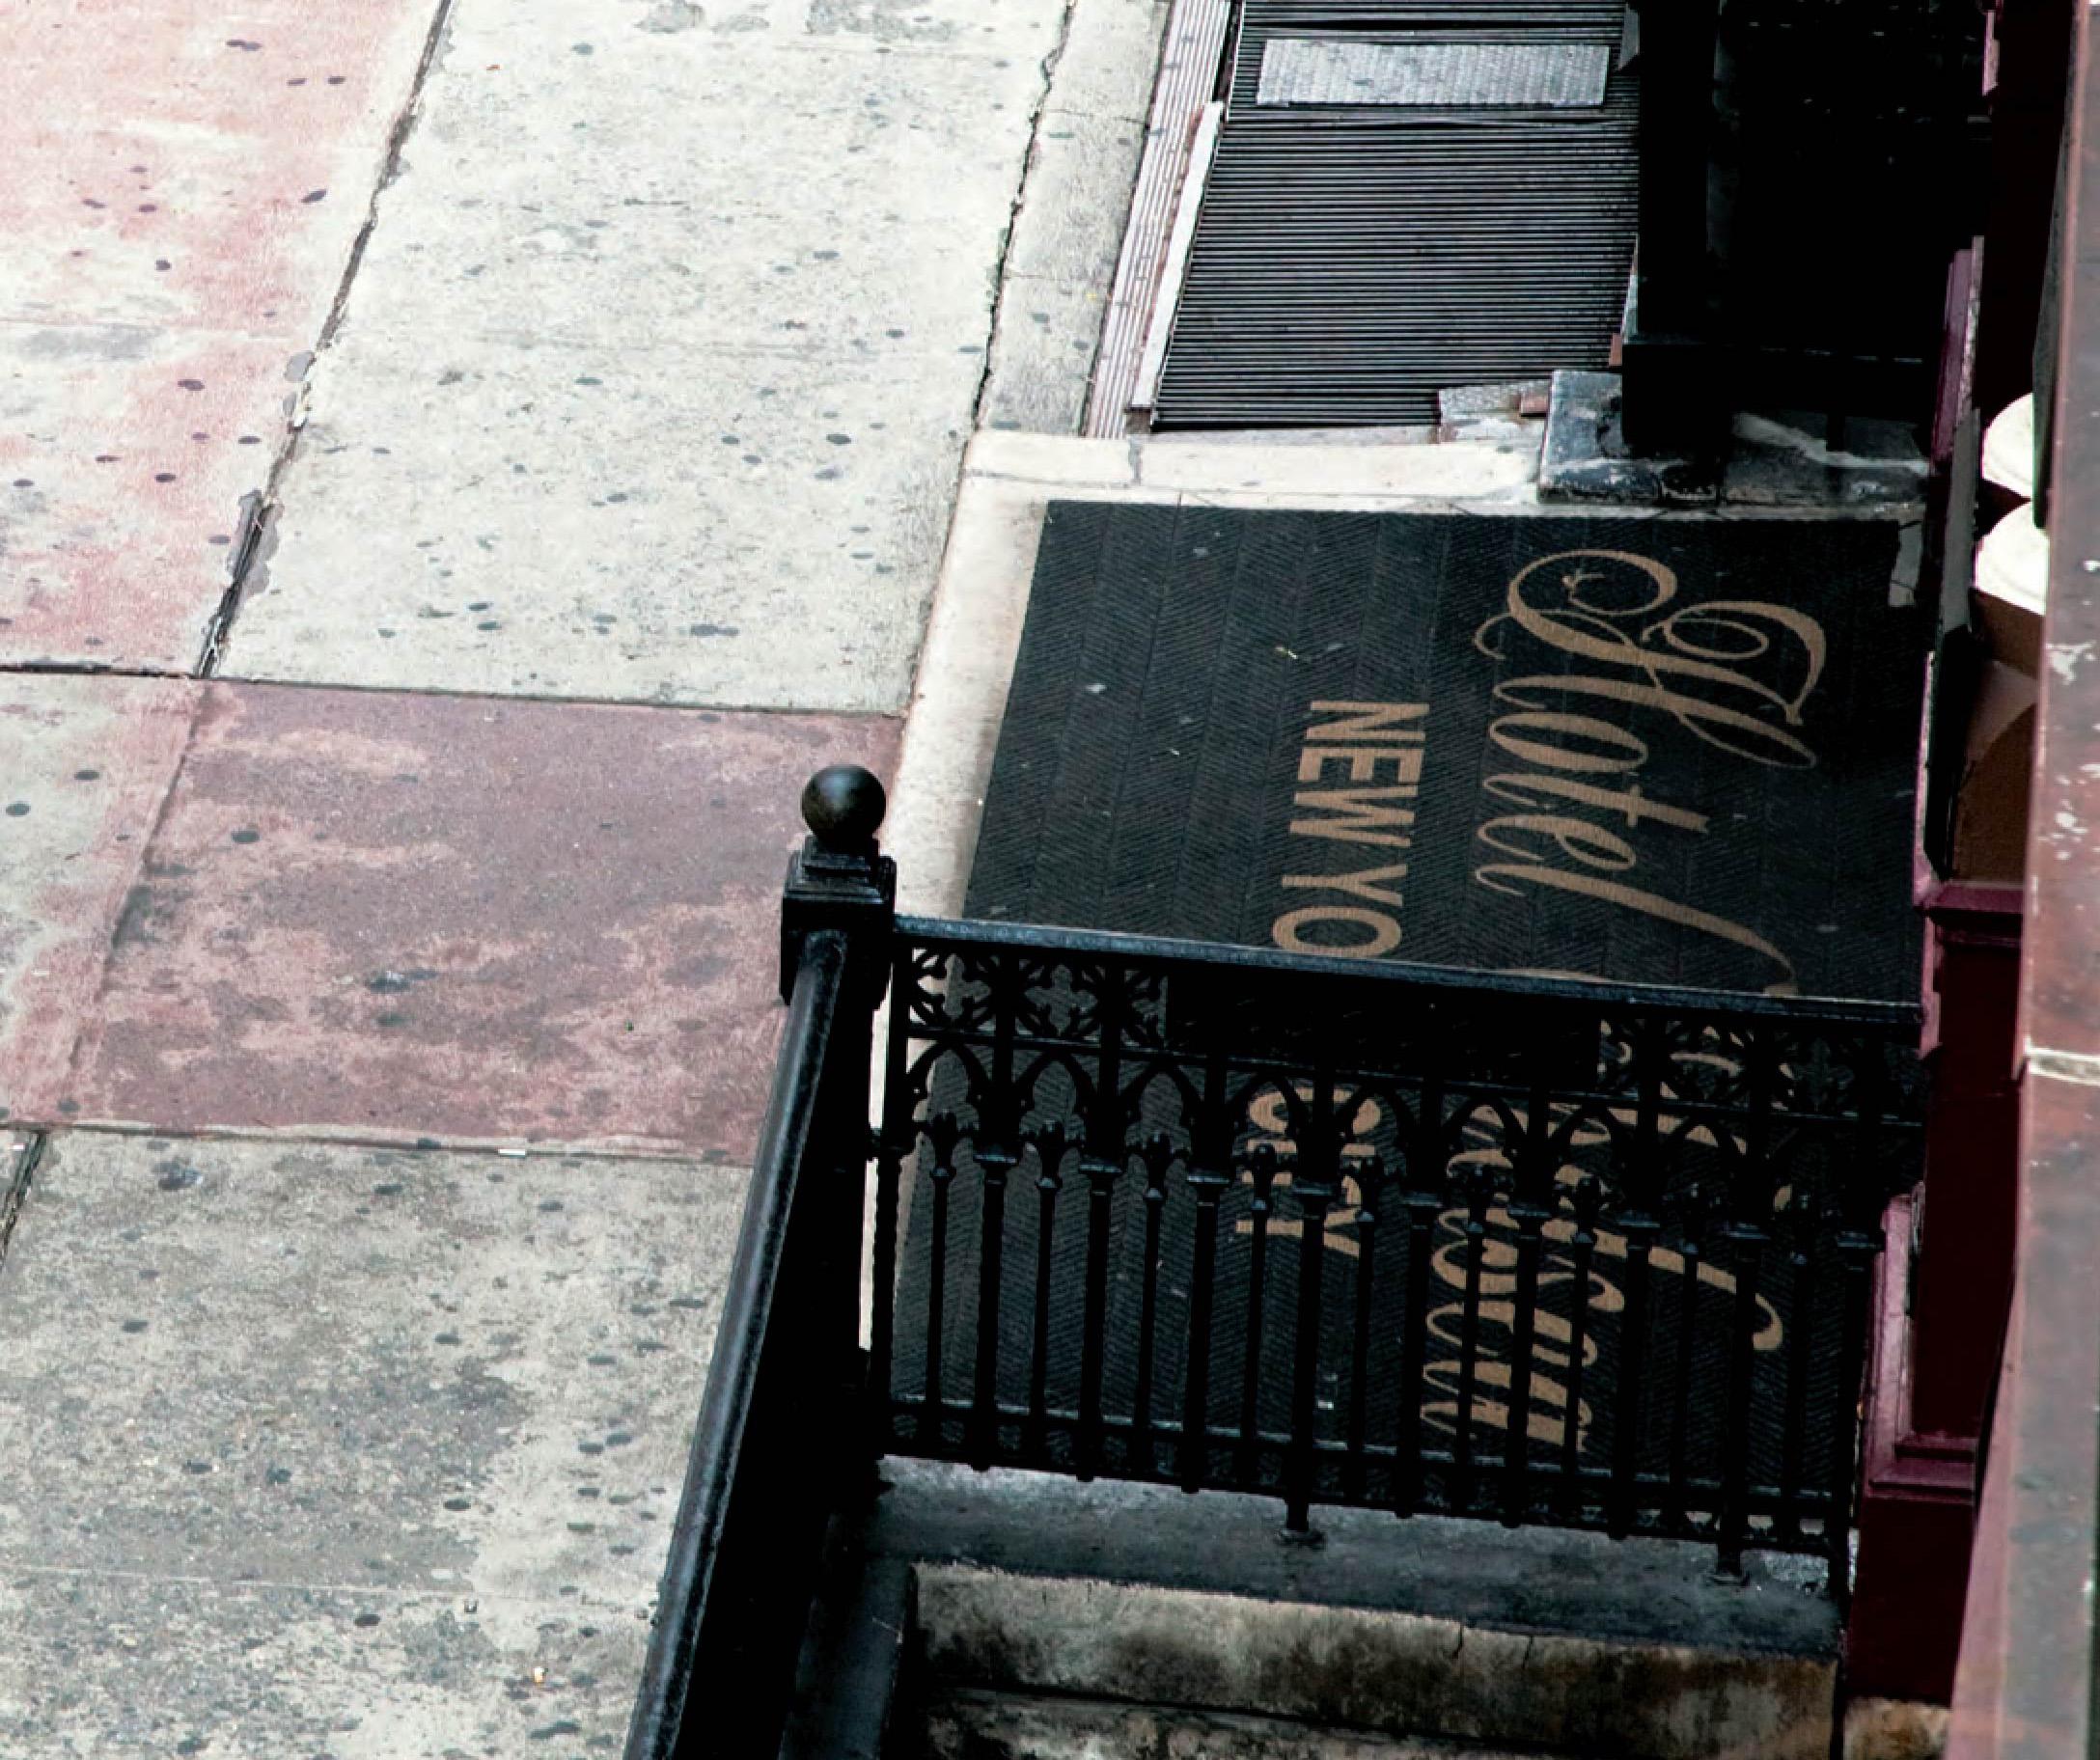 Hôtel Chelsea, New York 2011
Photographies extraites du livre de photographies intitulé Hotel Chelsea (éditeur pointed leaf press 2013).
C.I.C. archivistique
Taille : 26.6 in H x 40 in W
Edition de 10 + 2AP

*Très grande taille disponible en édition